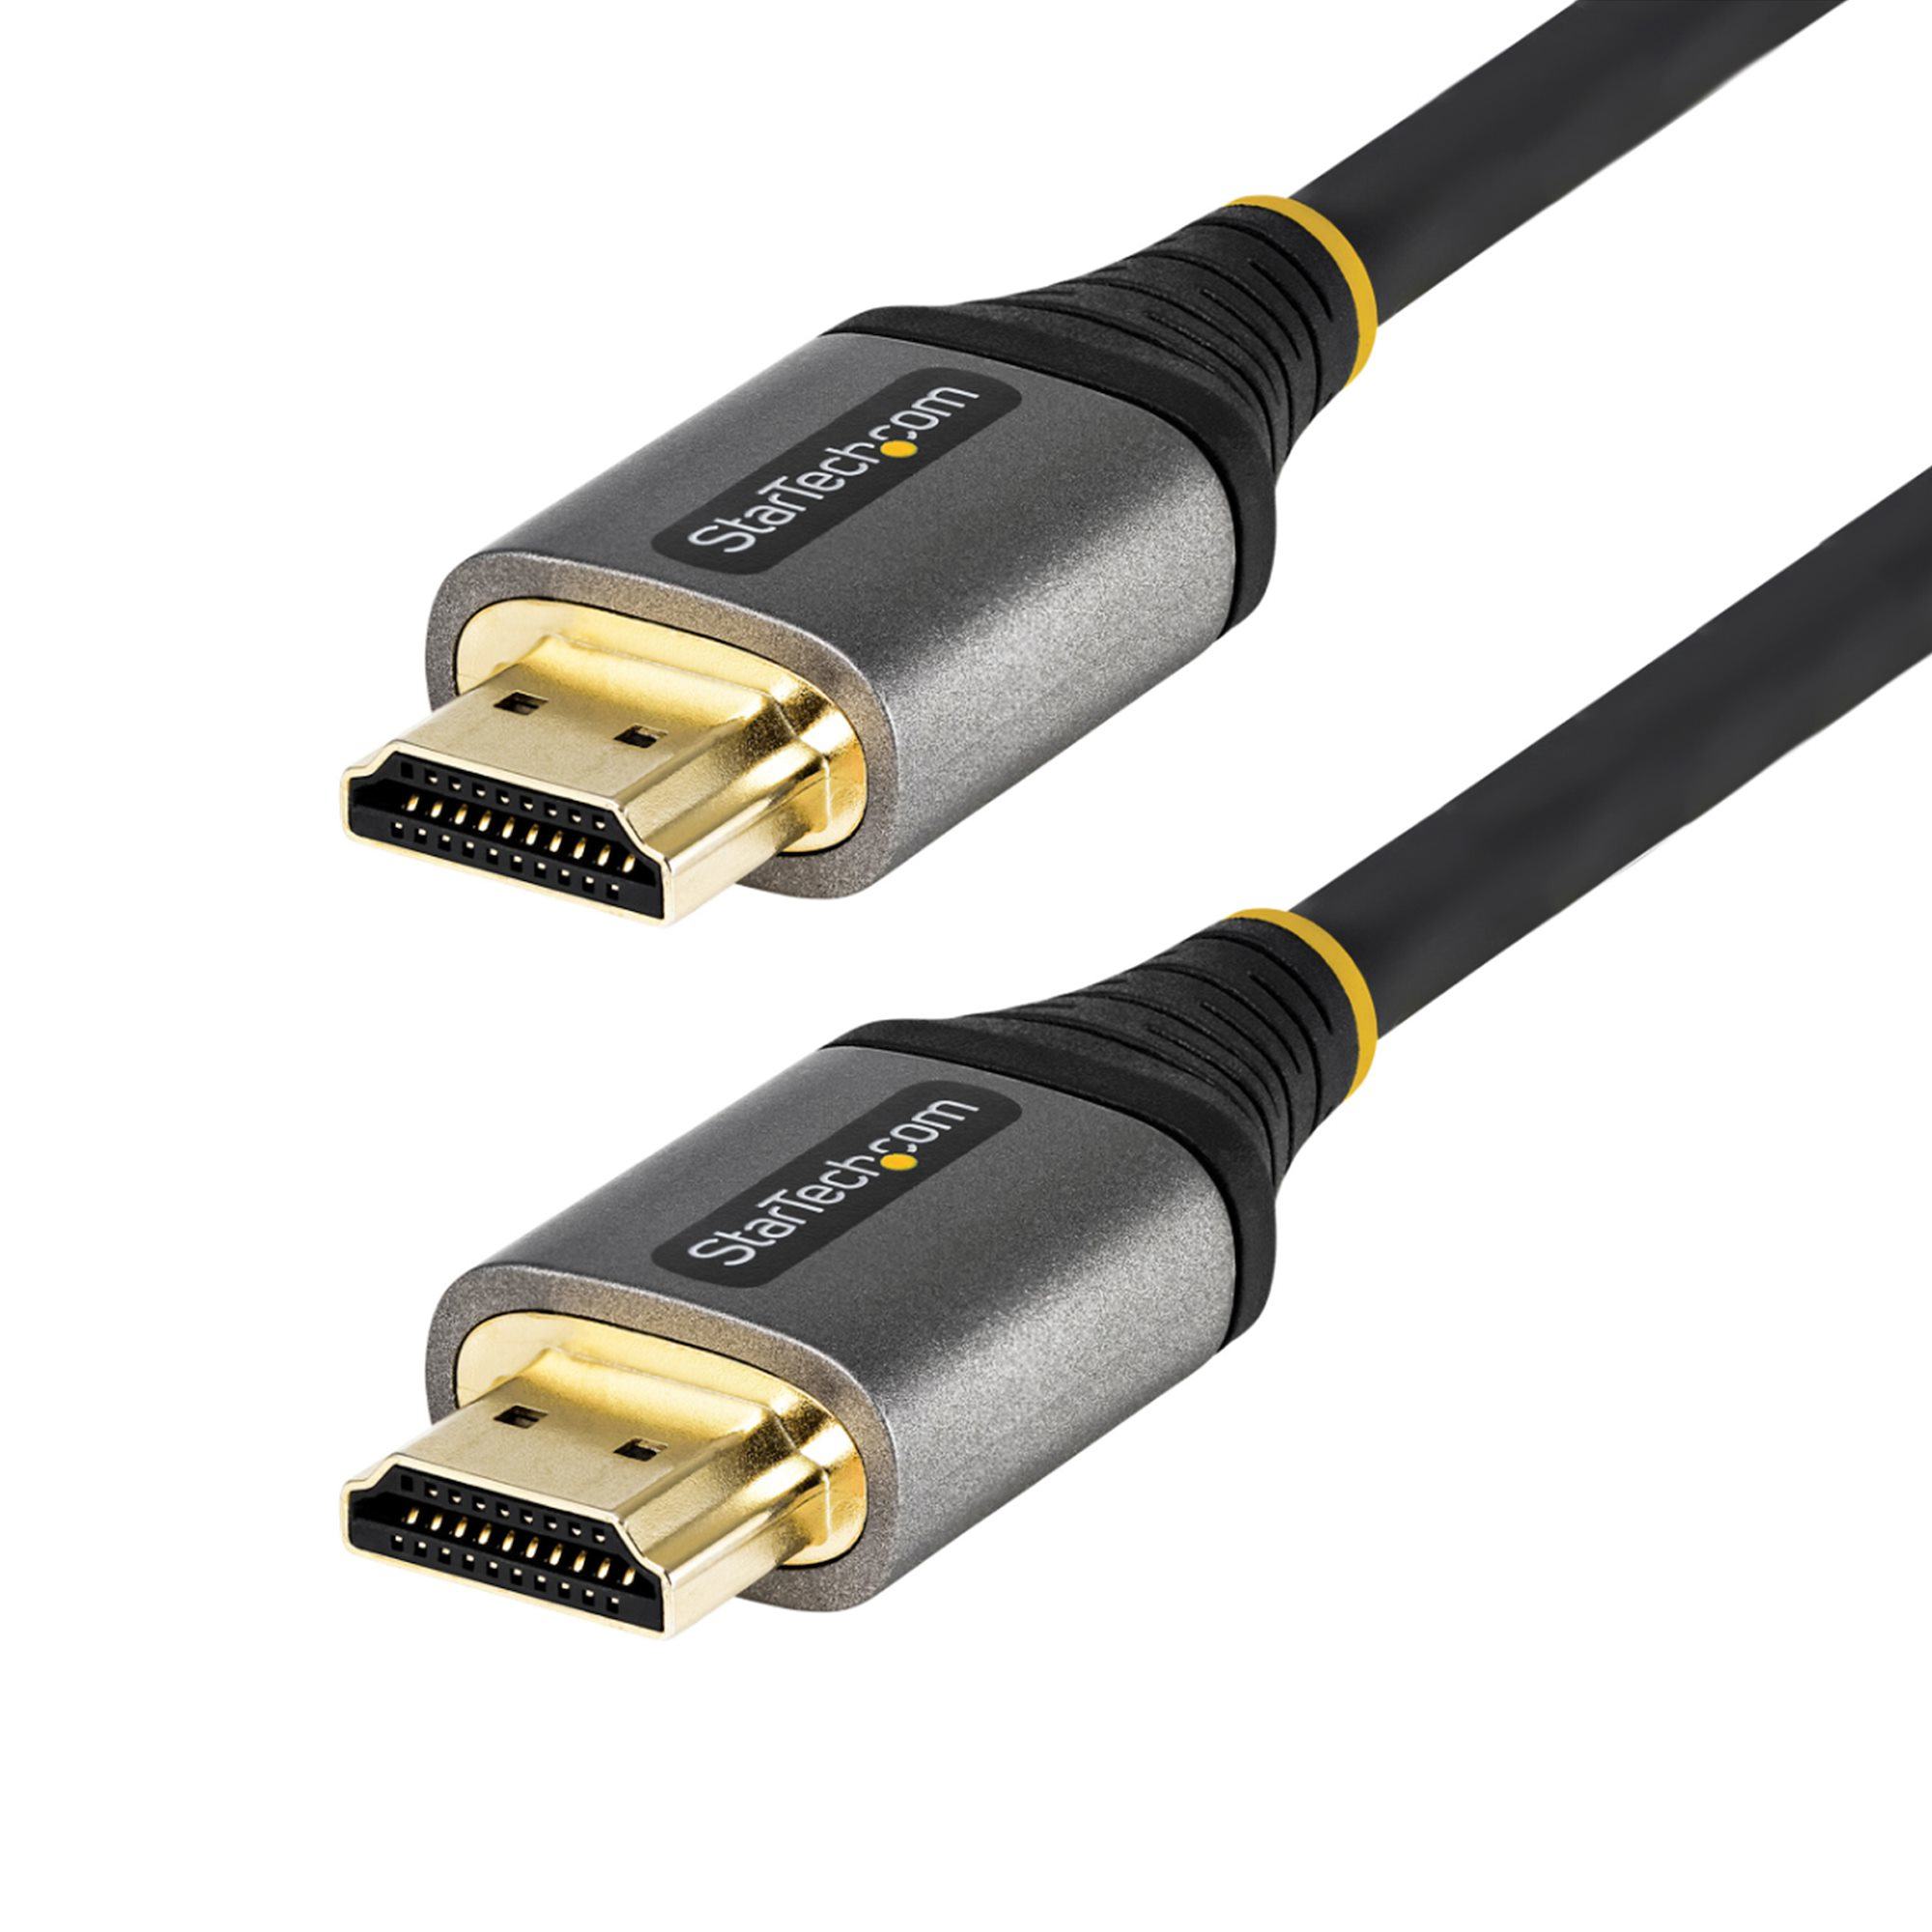 StarTech.com 1m Premium zertifiziertes HDMI 2.0 Kabel - High Speed Ultra HD 4K 60Hz HDMI Kabel mit Ethernet - HDR10, ARC - UHD HDMI Videokabel - Für UHD Monitore, TVs, Displays - M/M (HDMMV1M)